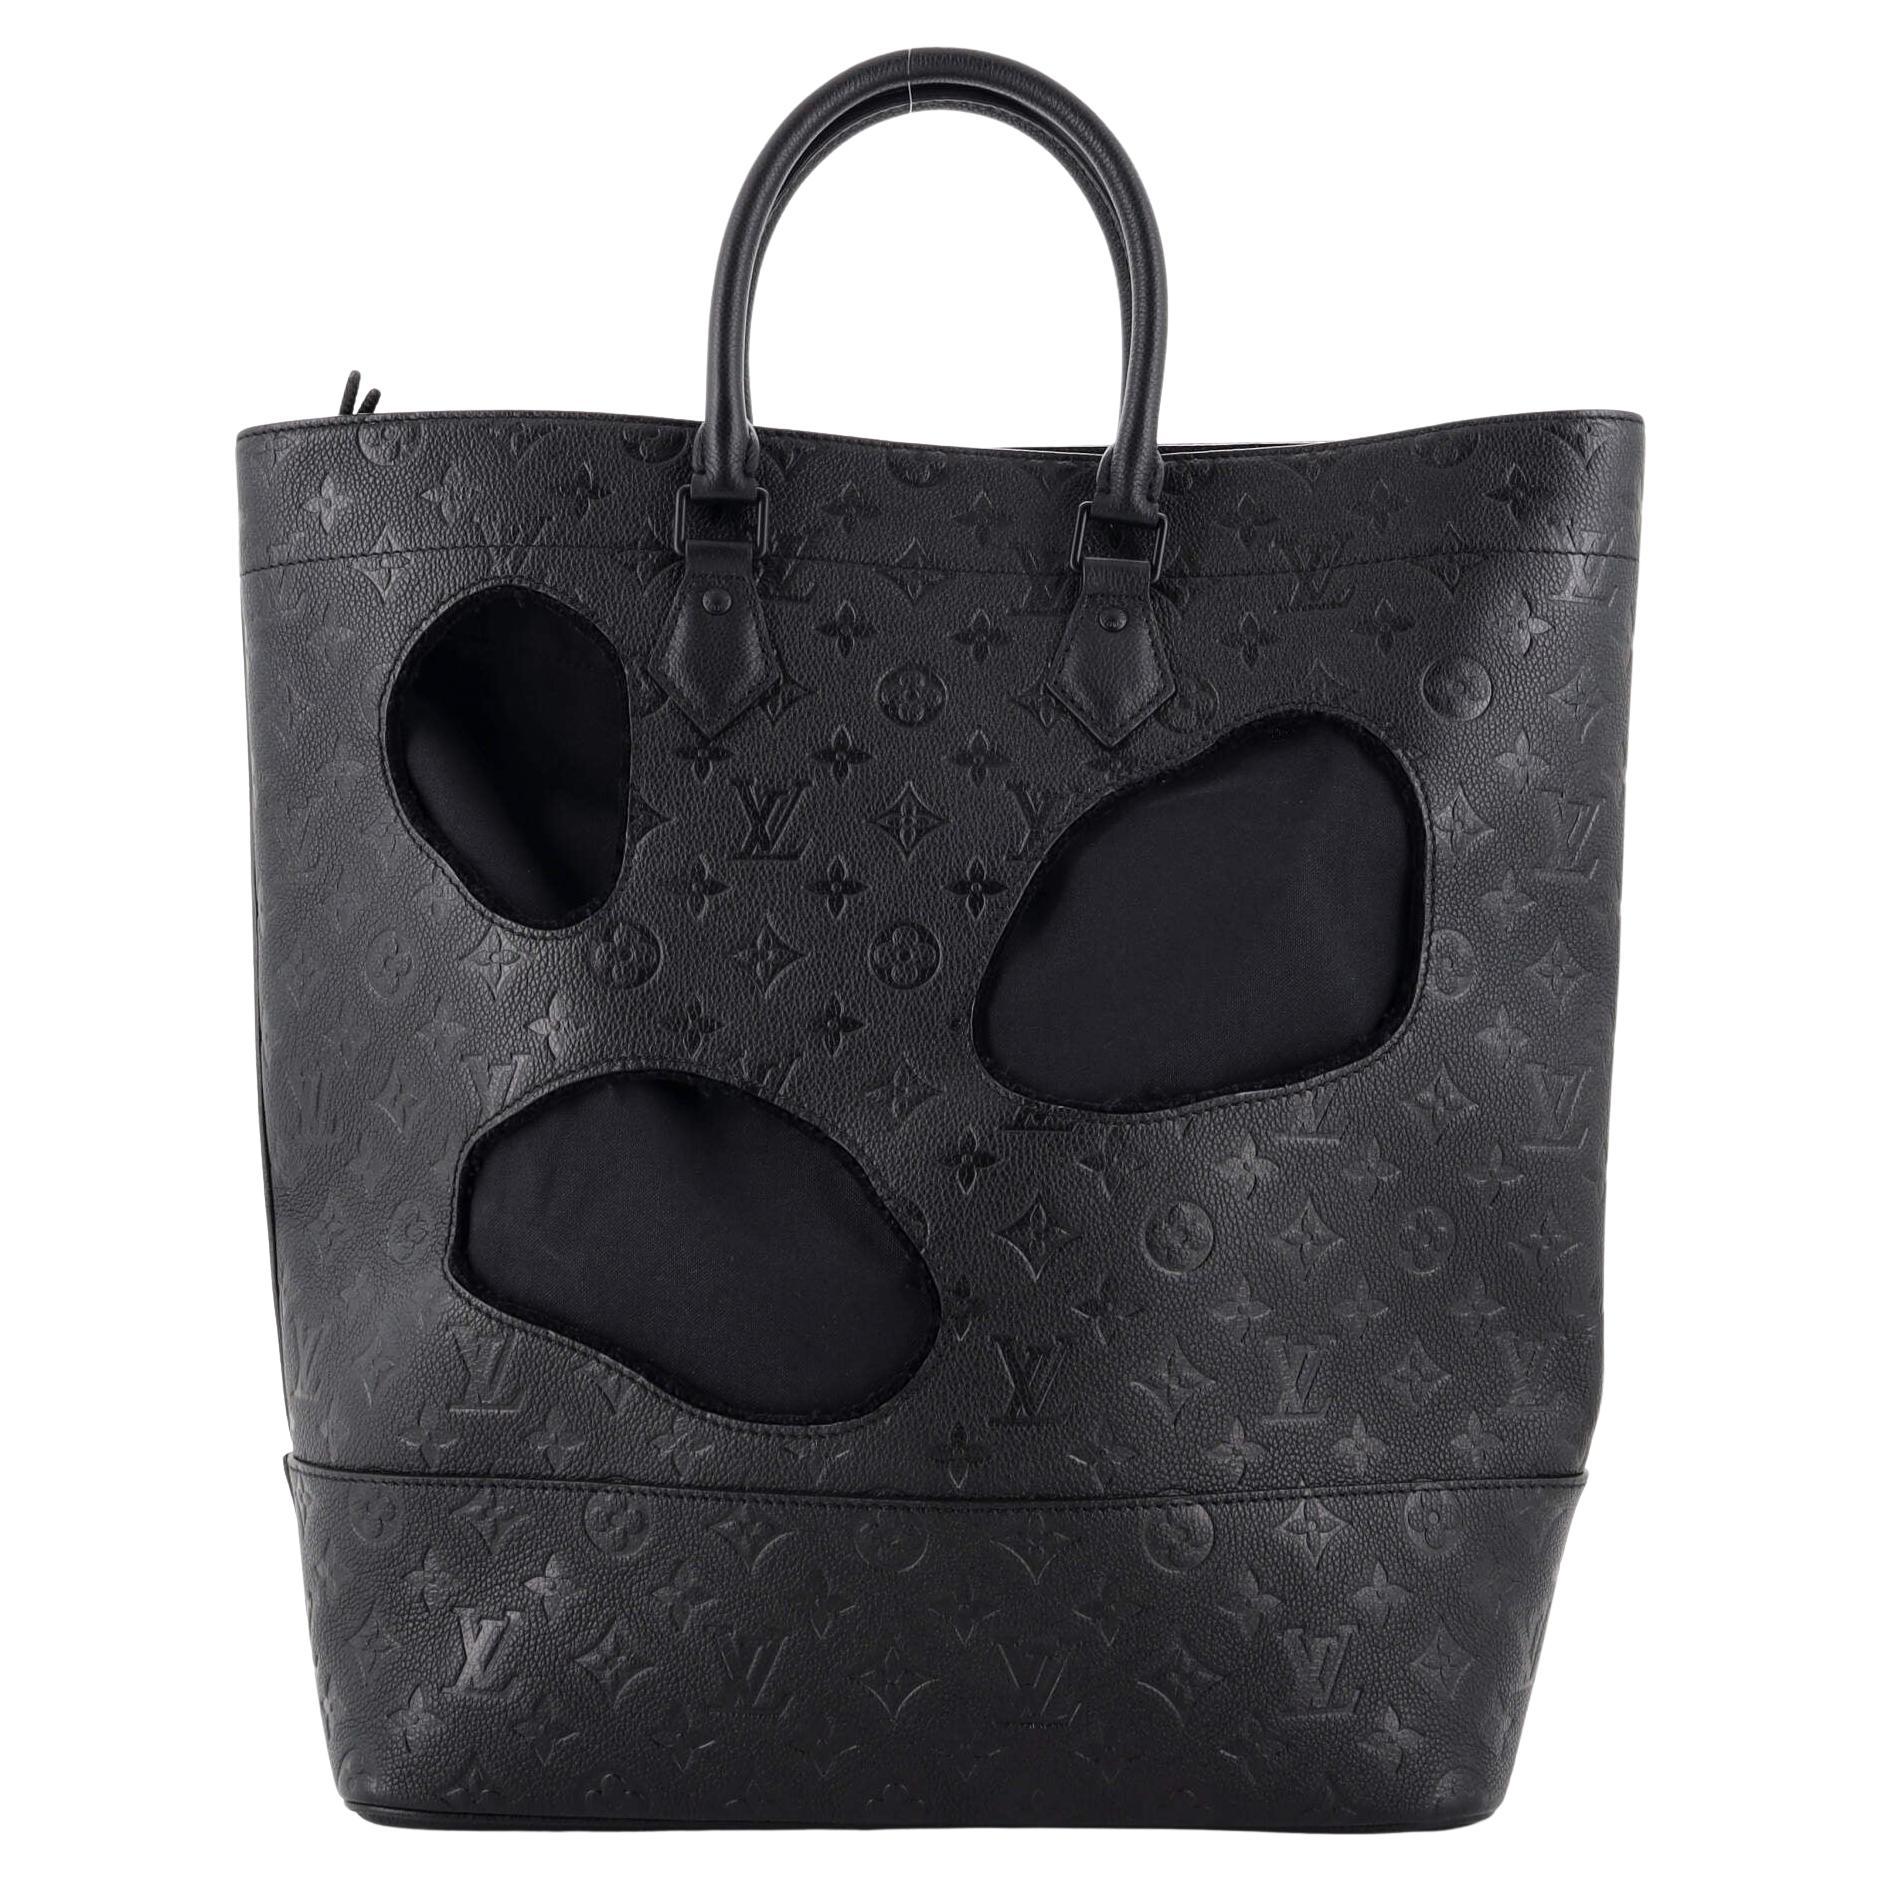 Louis Vuitton - Trianon PM Tote Bag - Black - Monogram Leather - Women - Luxury